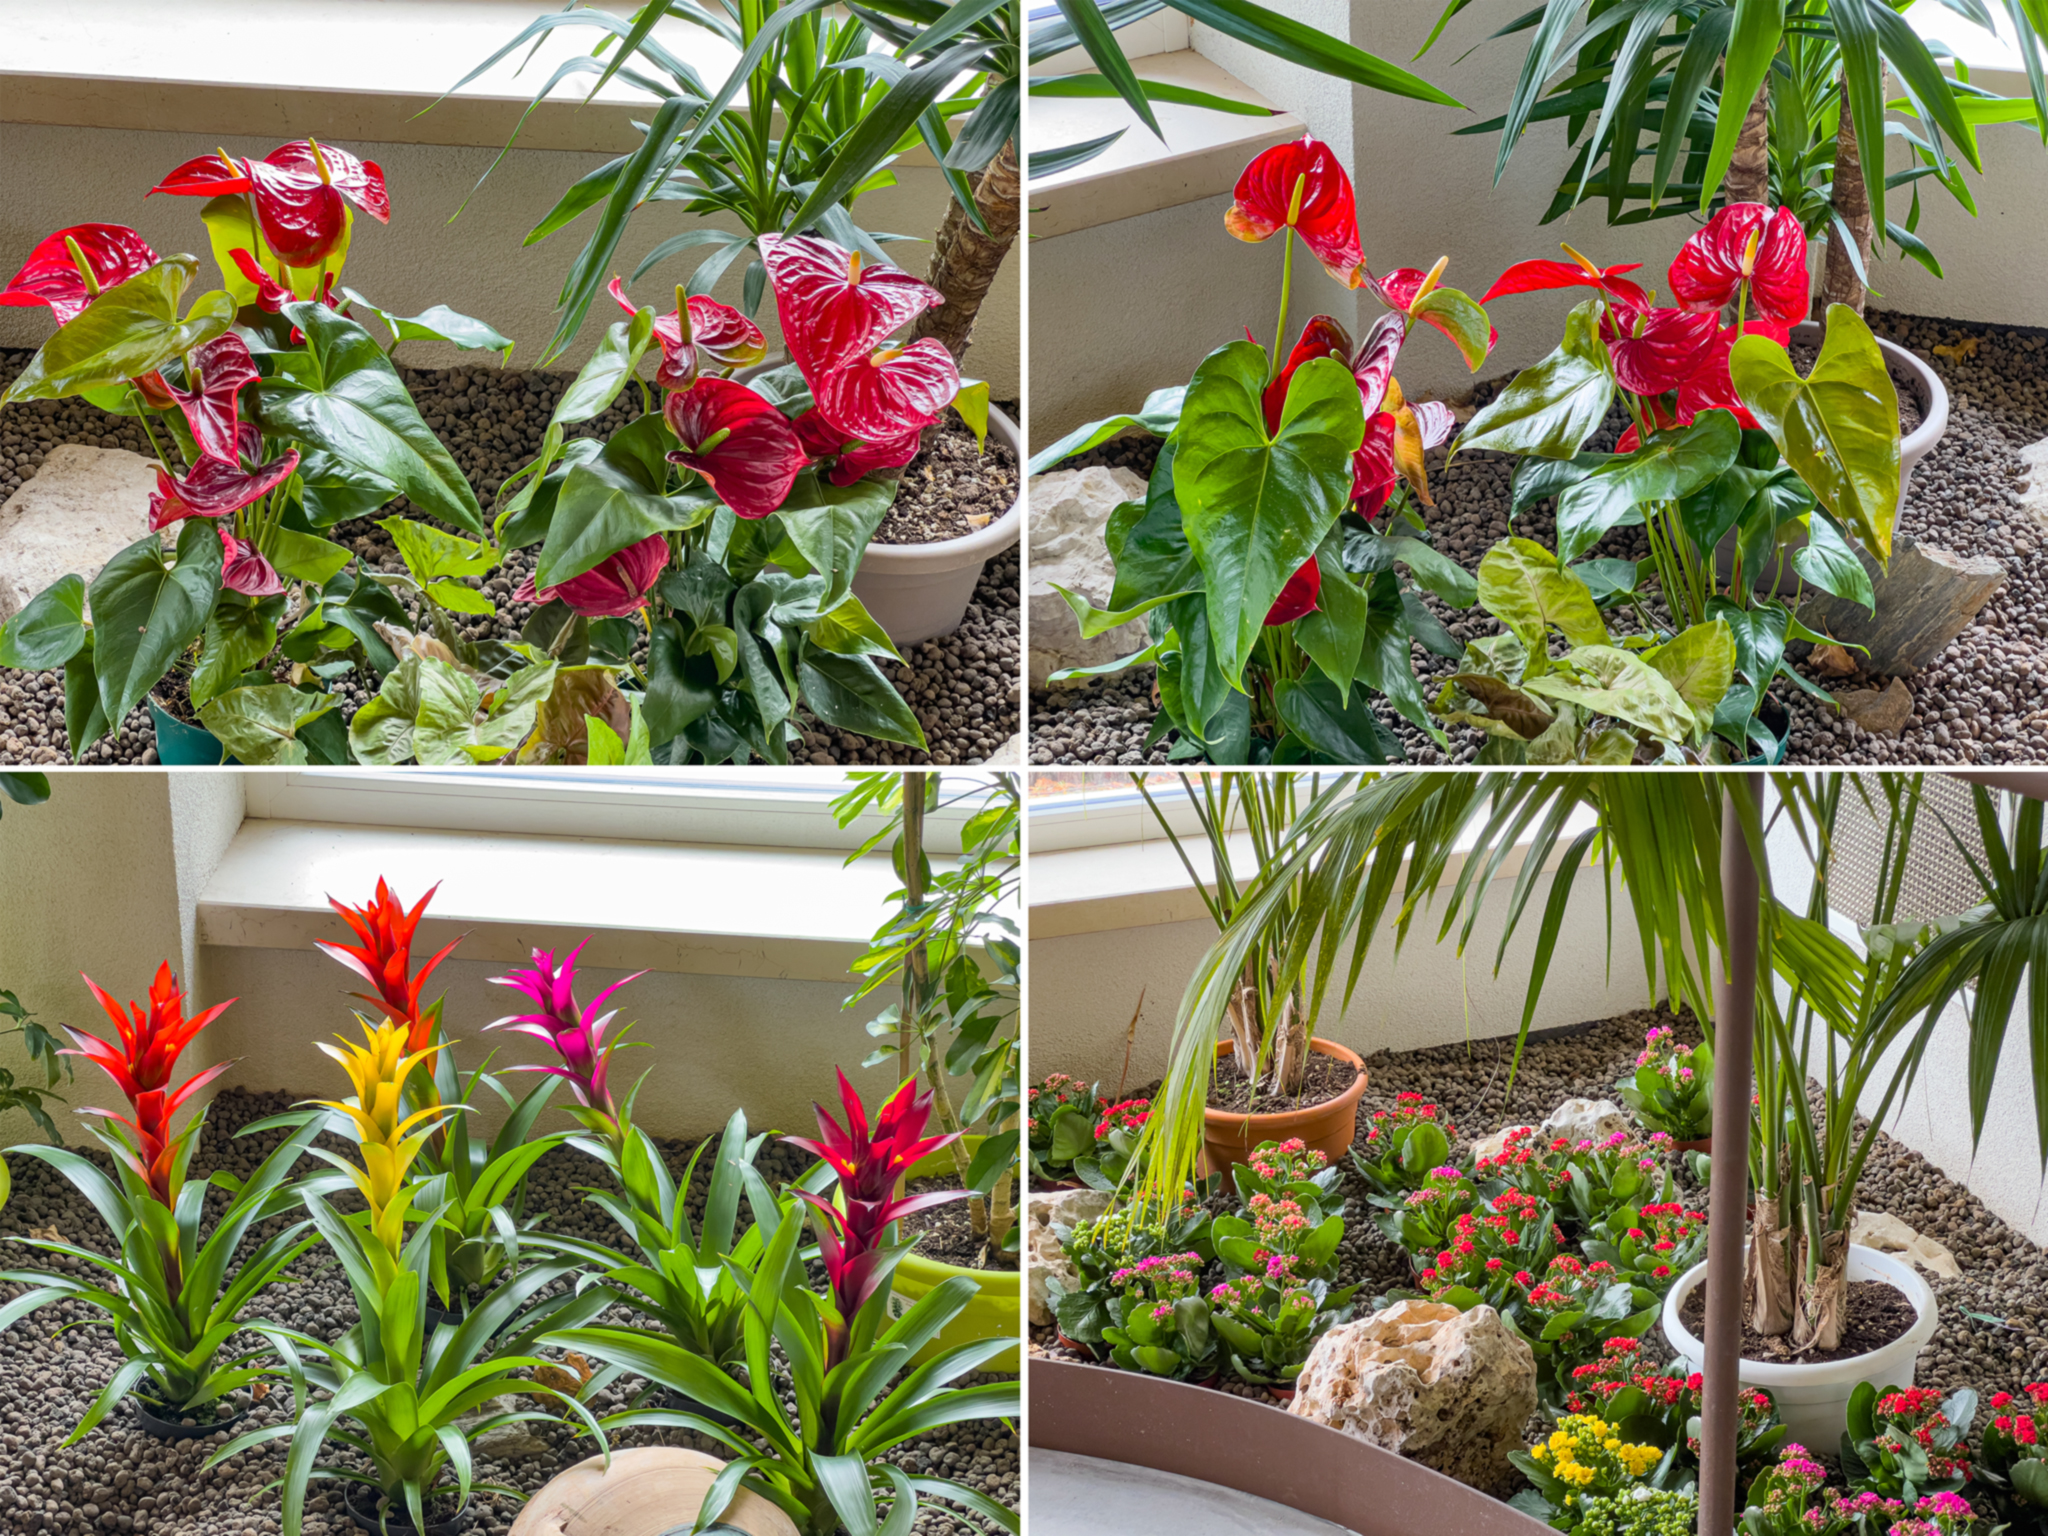 Il nostro giardino d’inverno Vi attende impreziosito da nuove piante e nuovi fiori. 😃 ❤ 🏤